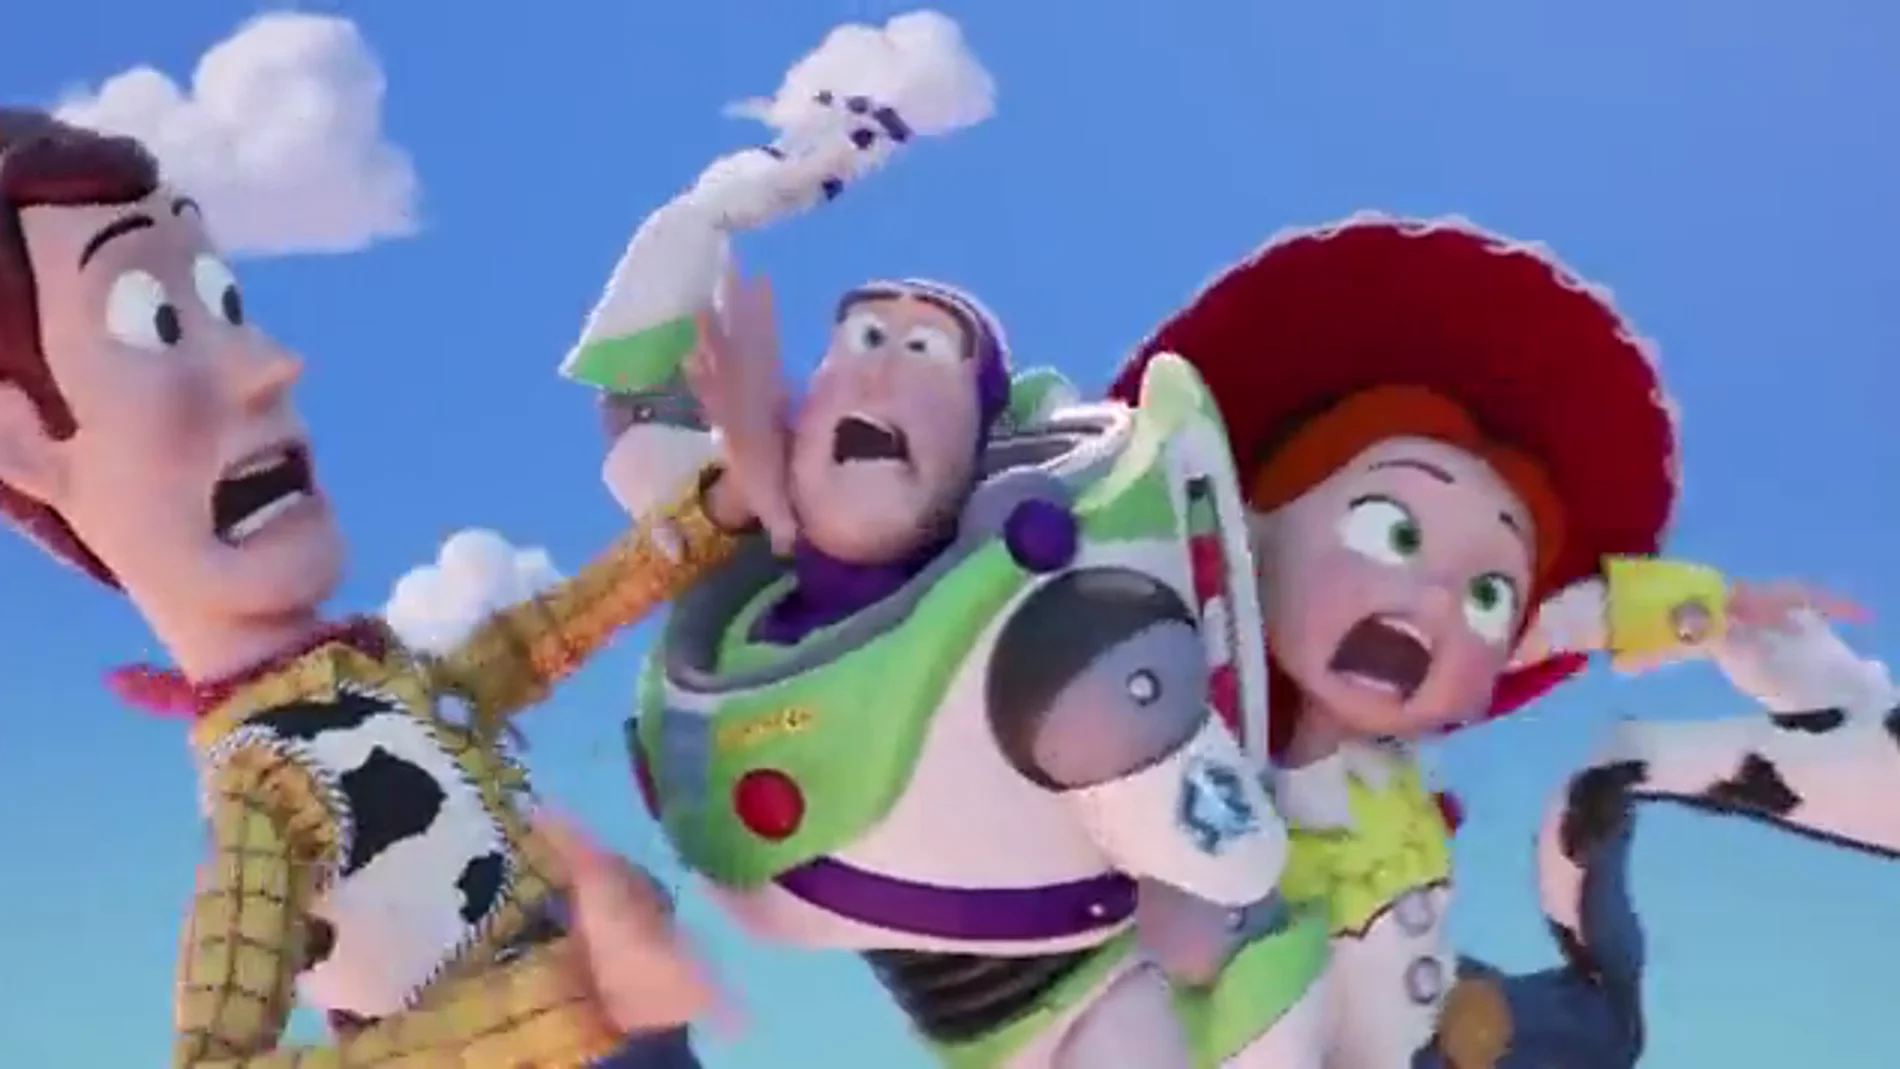 Las primeras imágenes de la esperada película Toy Story 4 desvelan un nuevo personaje: Forky